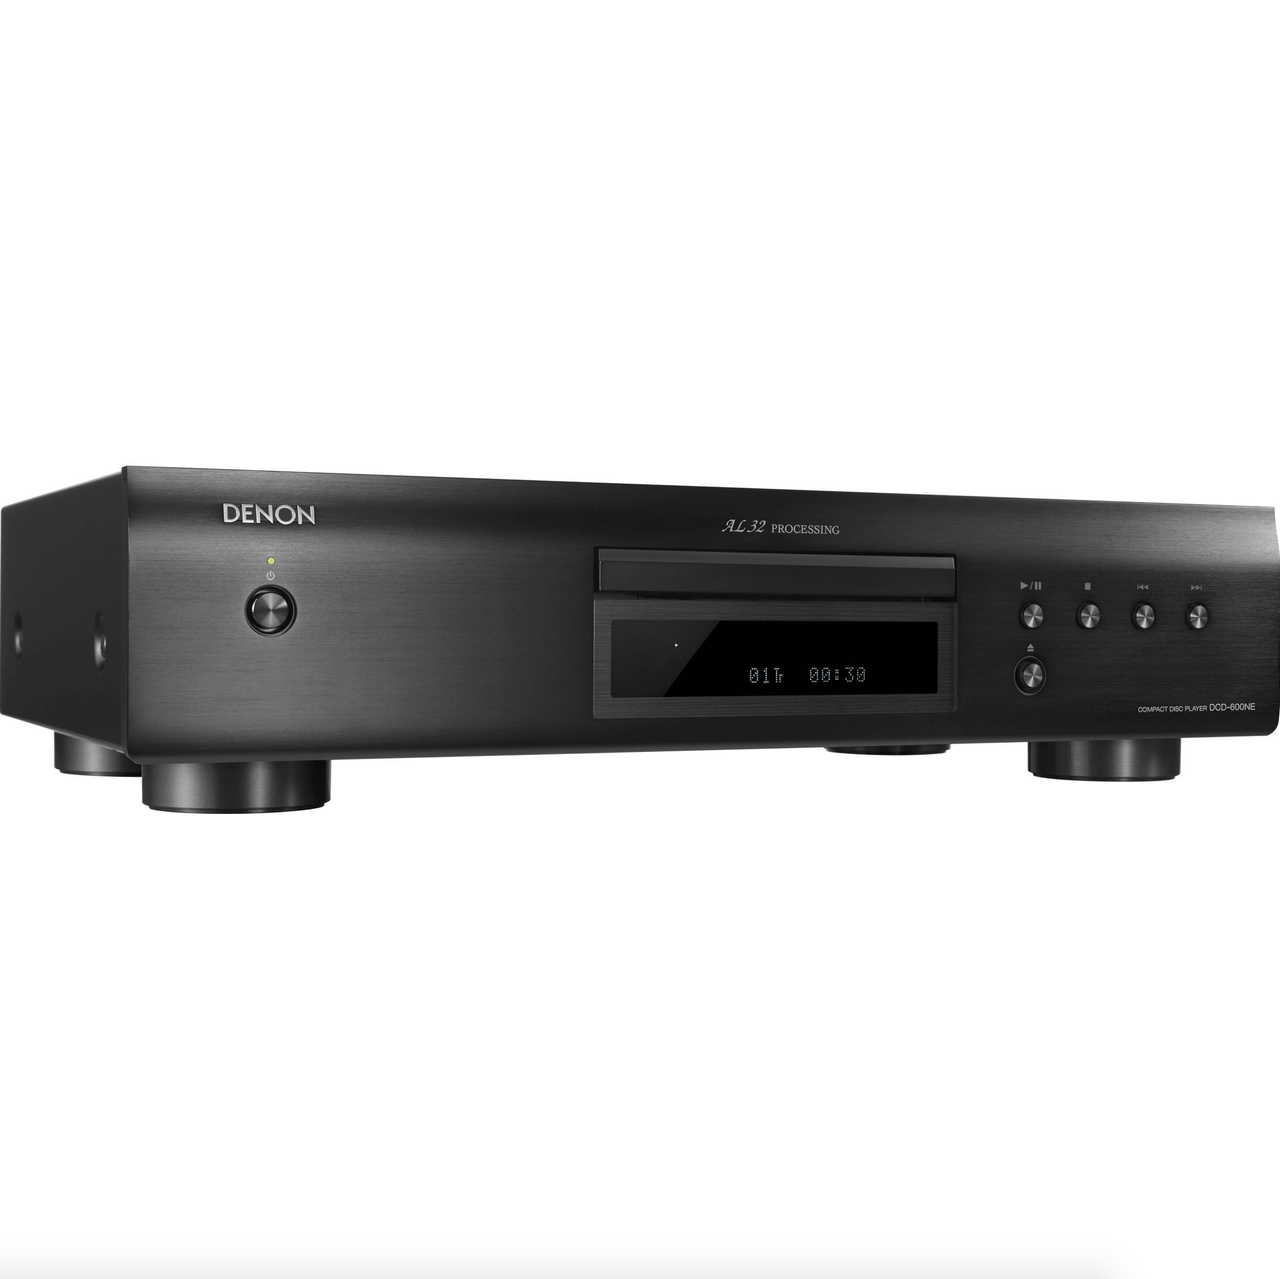 Denon DCD-600NE CD Player AL32 Processing - 110v